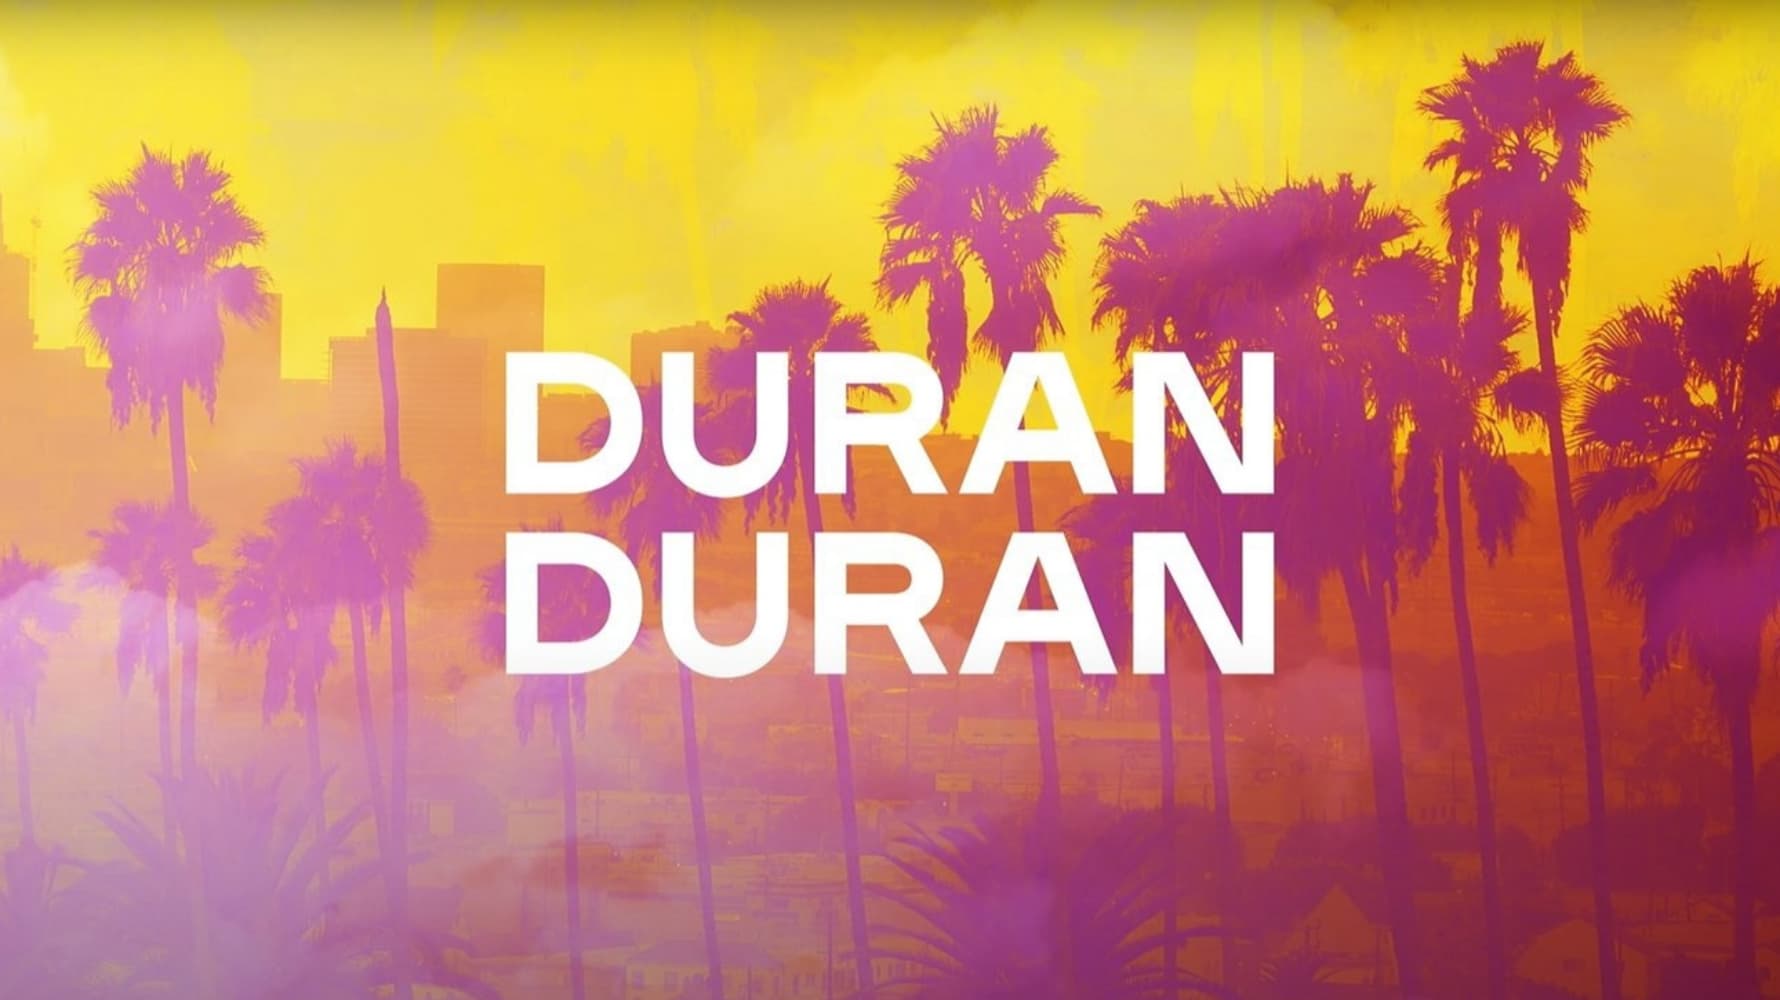 Duran Duran: A Hollywood High